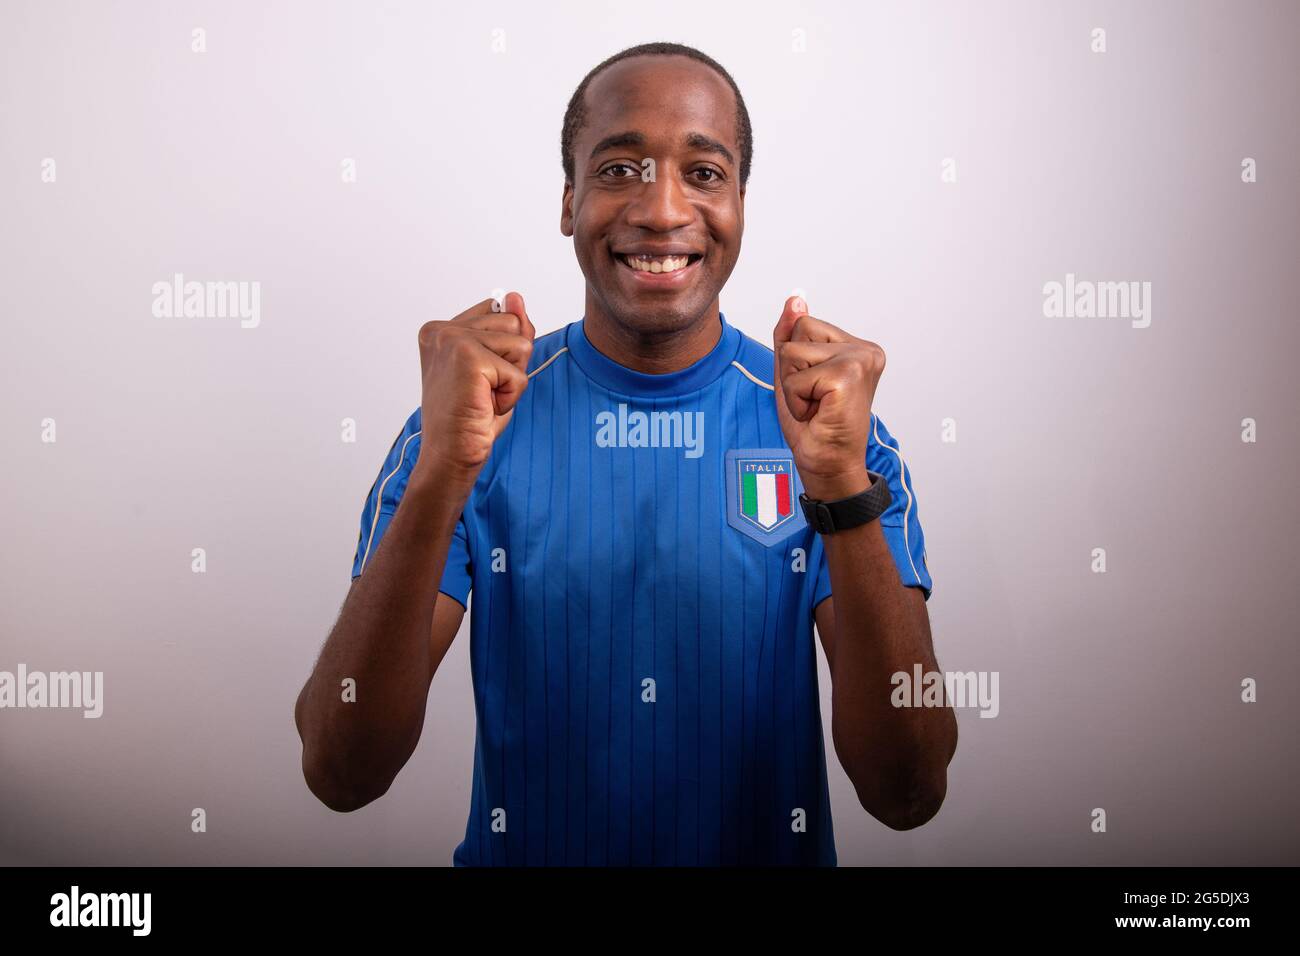 tifoso italiano è felice per la vittoria d'italia, tifoso festeggiando, afro ragazzo italiano con la maglia della nazionale di calcio Foto Stock